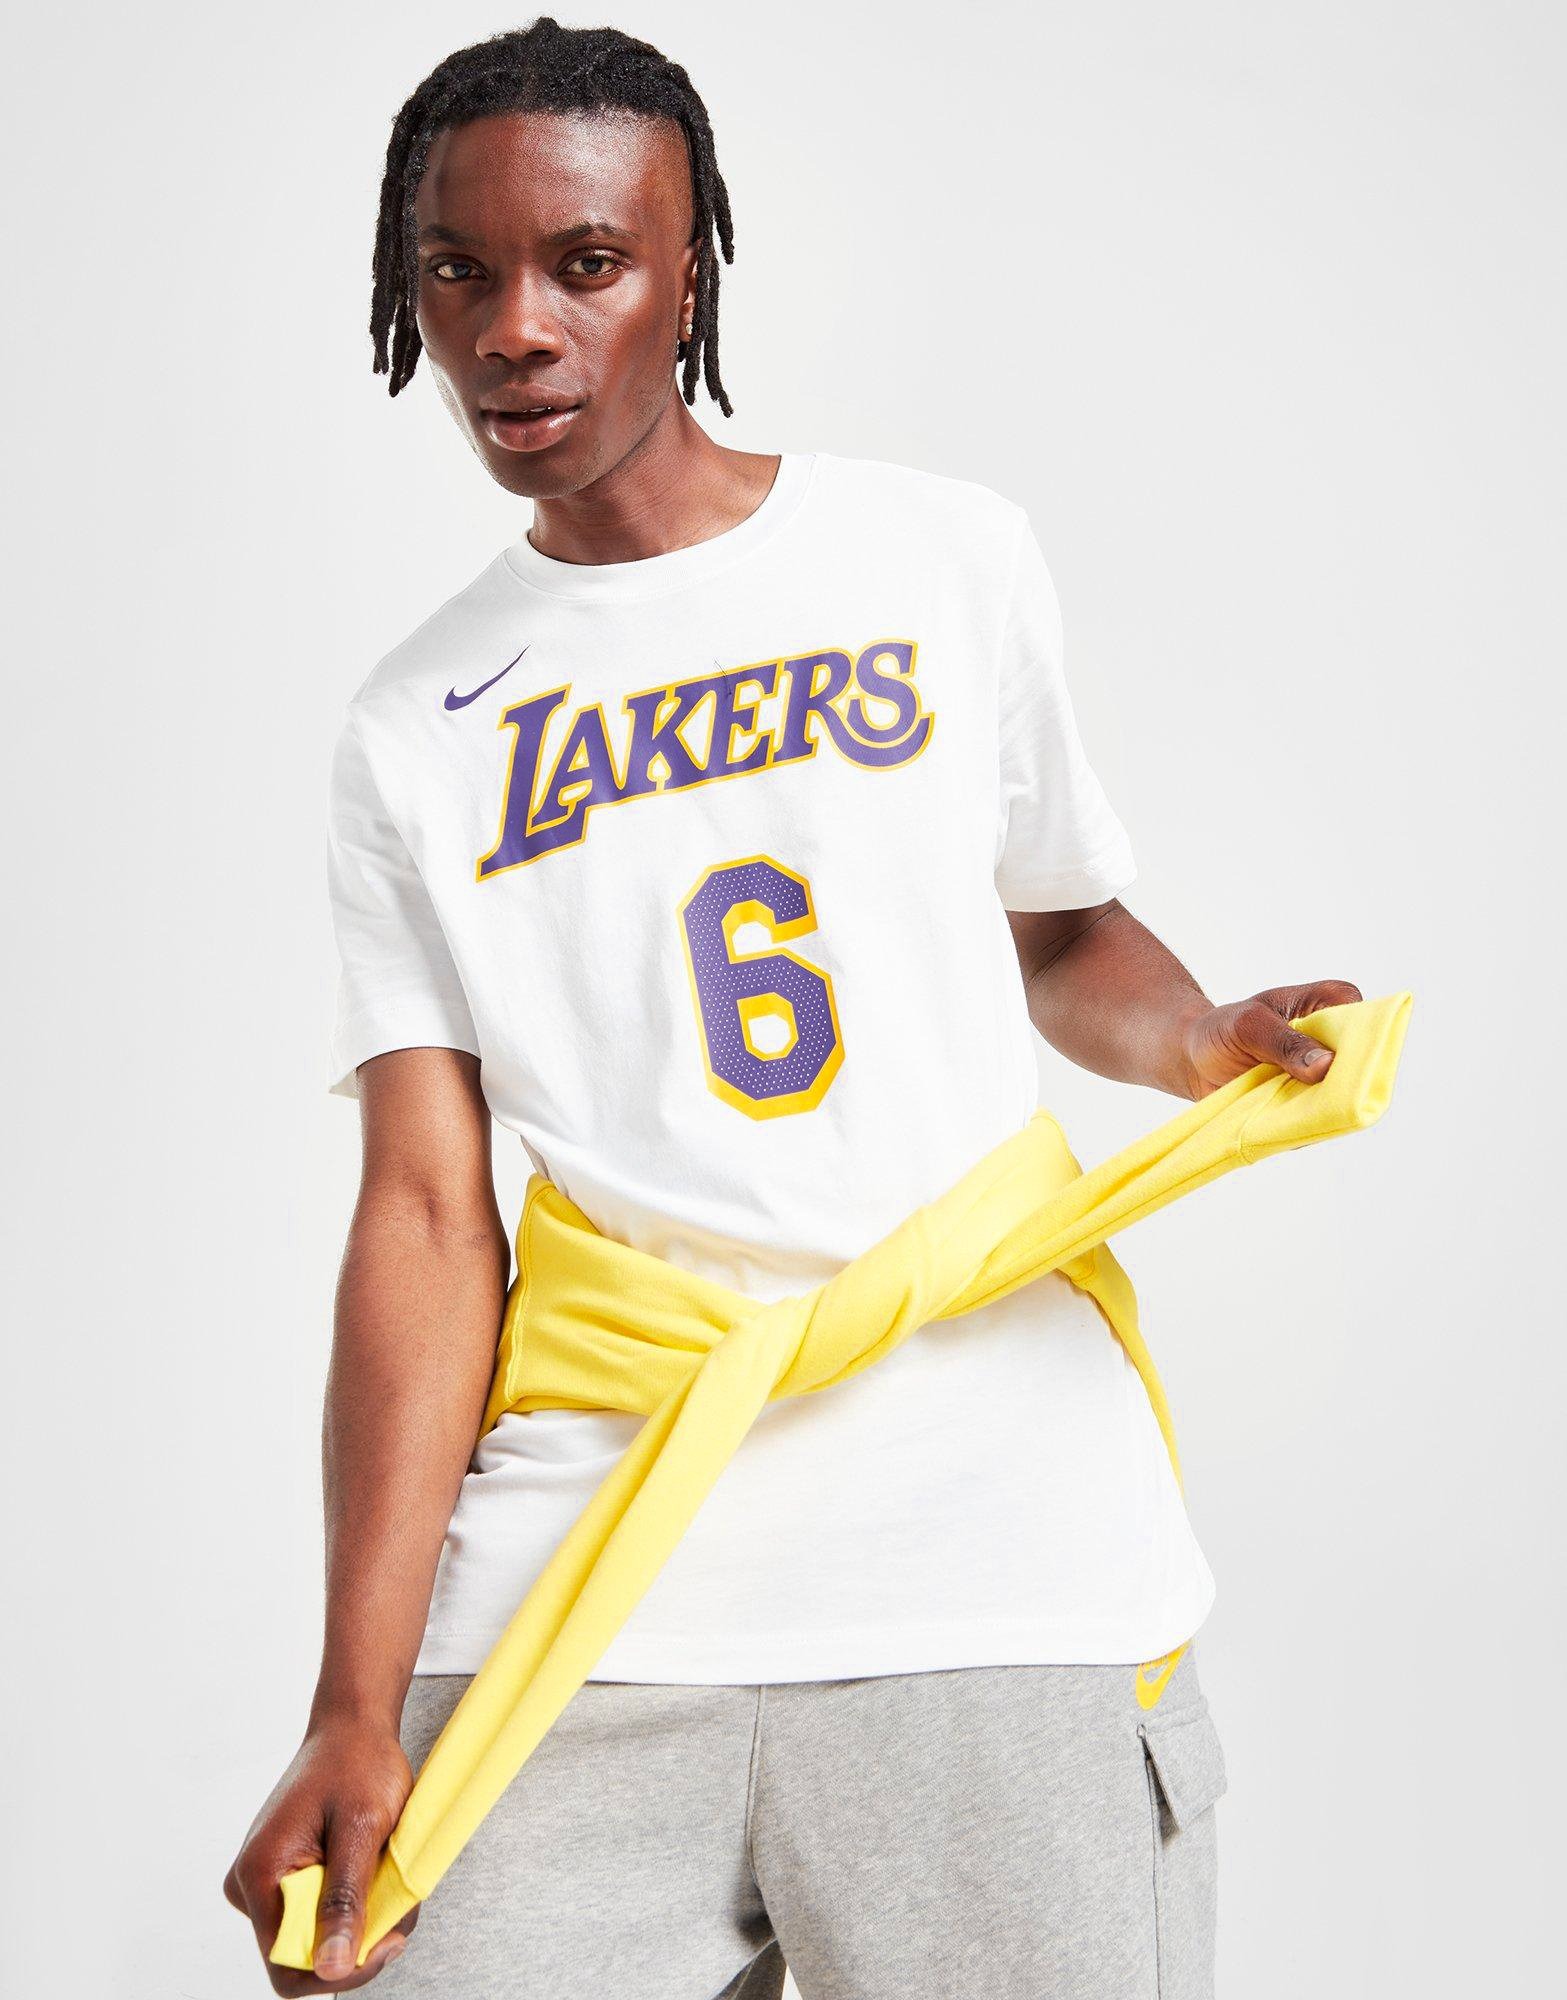 Los Angeles Lakers Essential Club Men's Nike NBA T-Shirt.